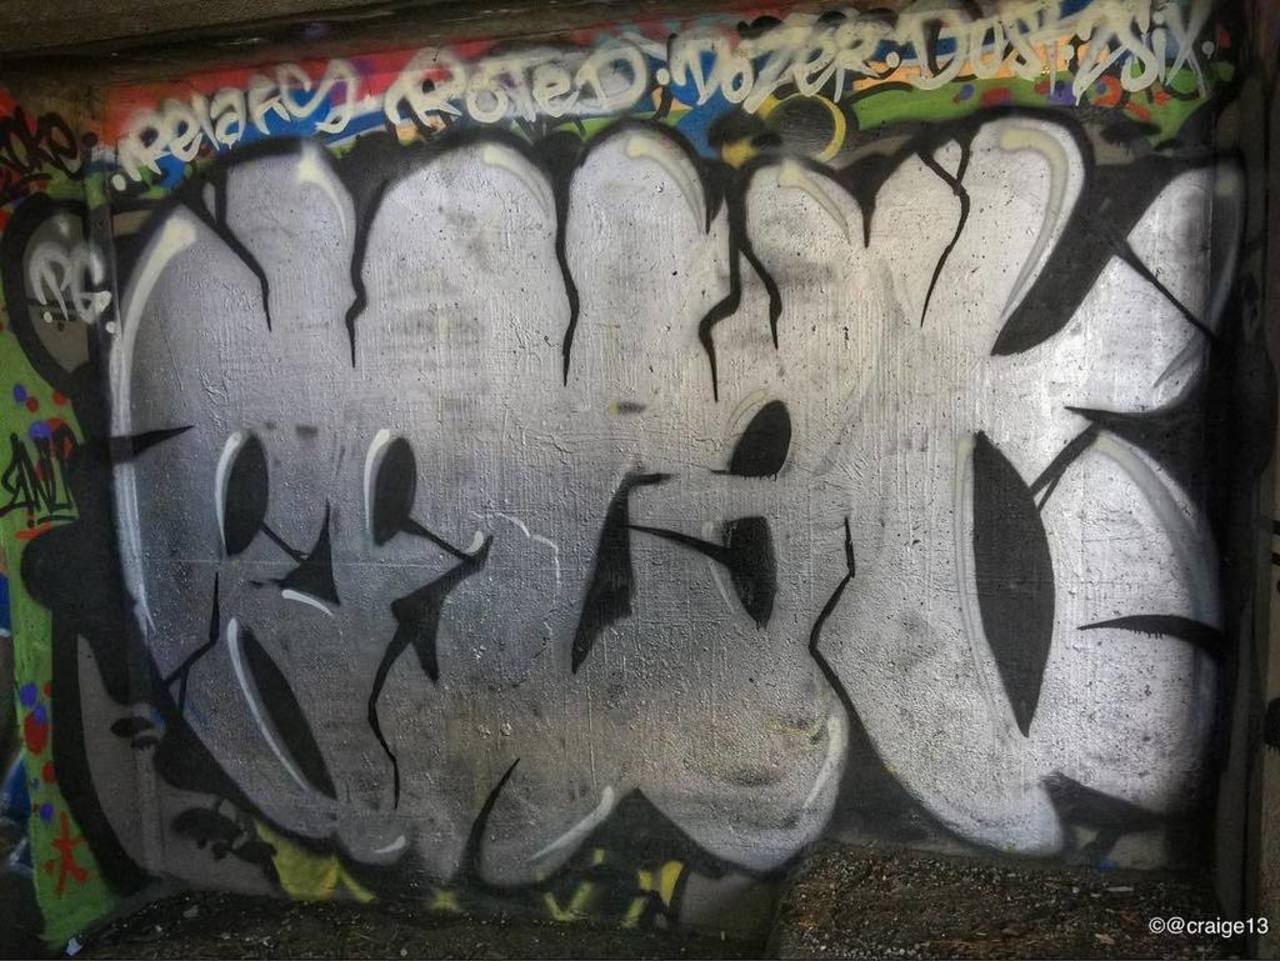 via #craige13 "http://bit.ly/1M7E7Ug" #graffiti #streetart http://t.co/T3cRdh1iTt